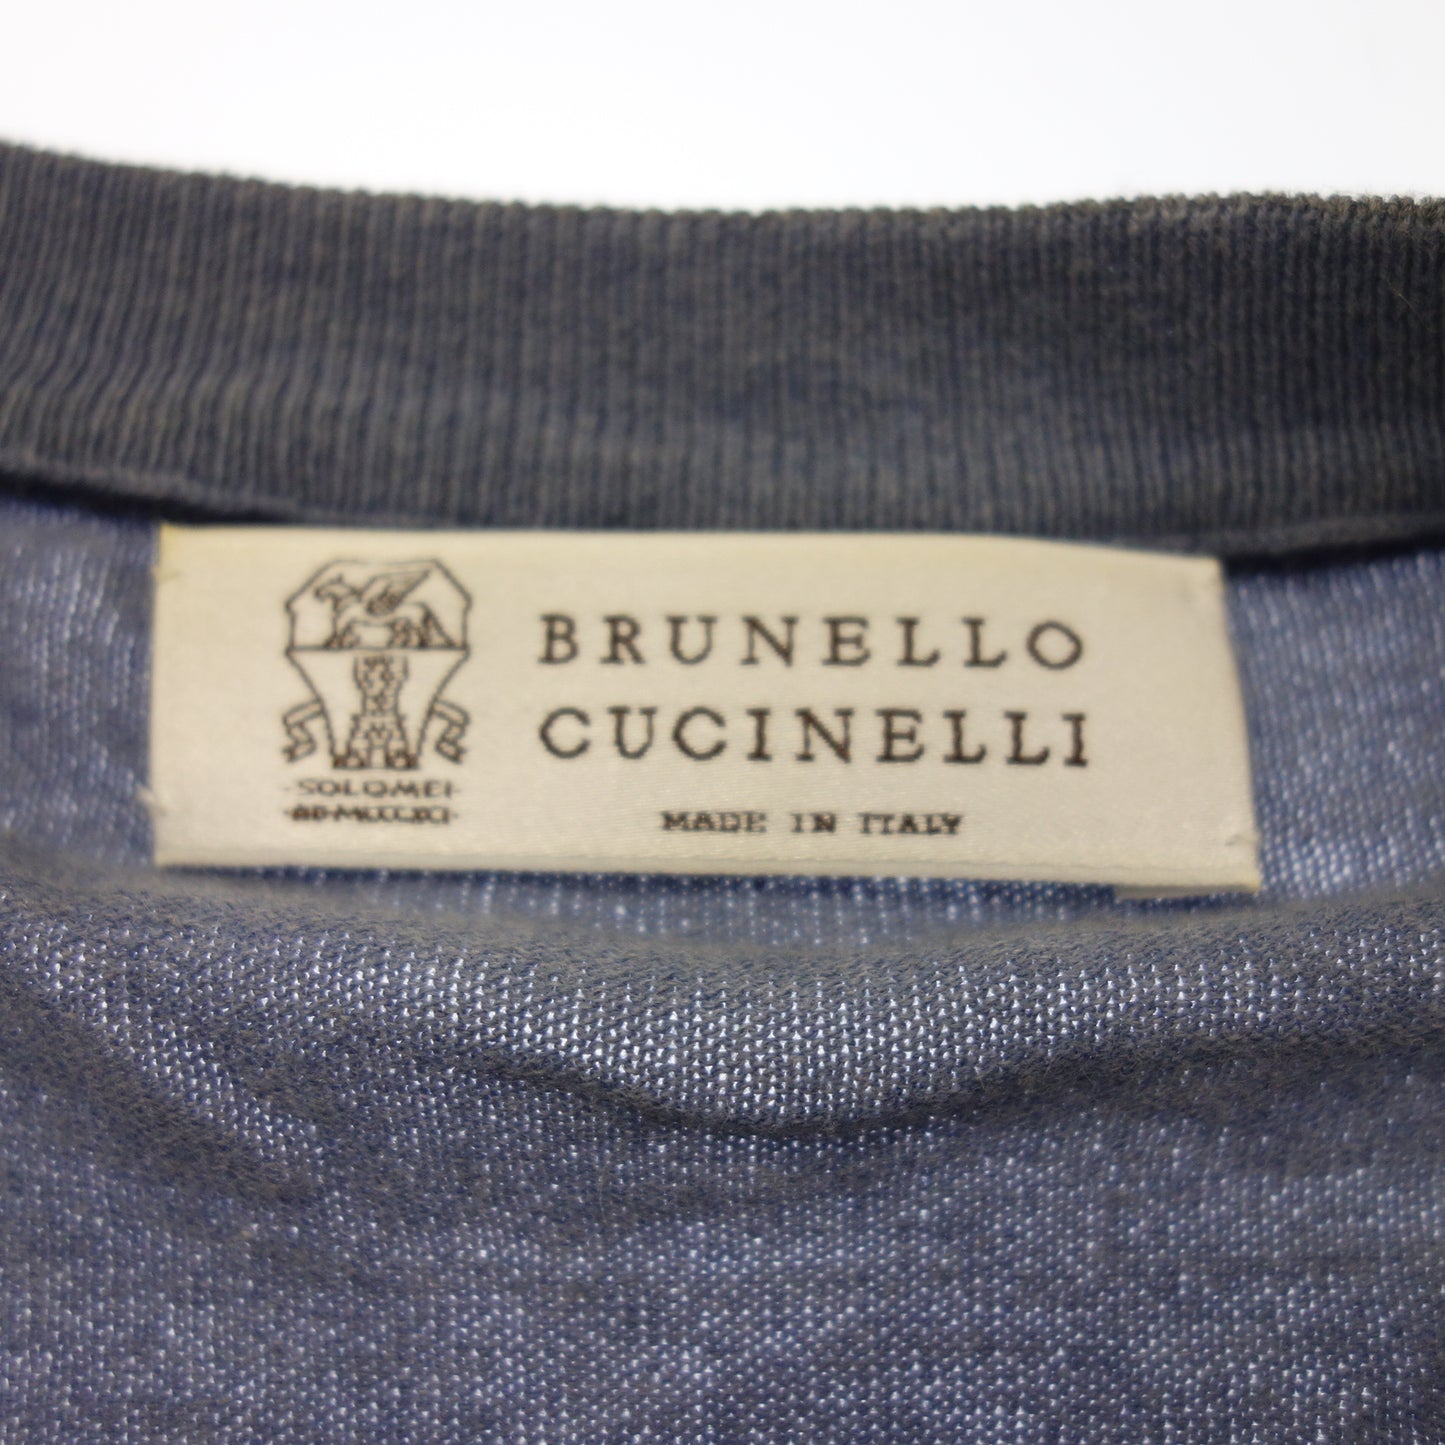 Good condition◆Brunello Cucinelli knit sweater V-neck men's blue size 46 BRUNELLO CUCINELLI [AFB16] 